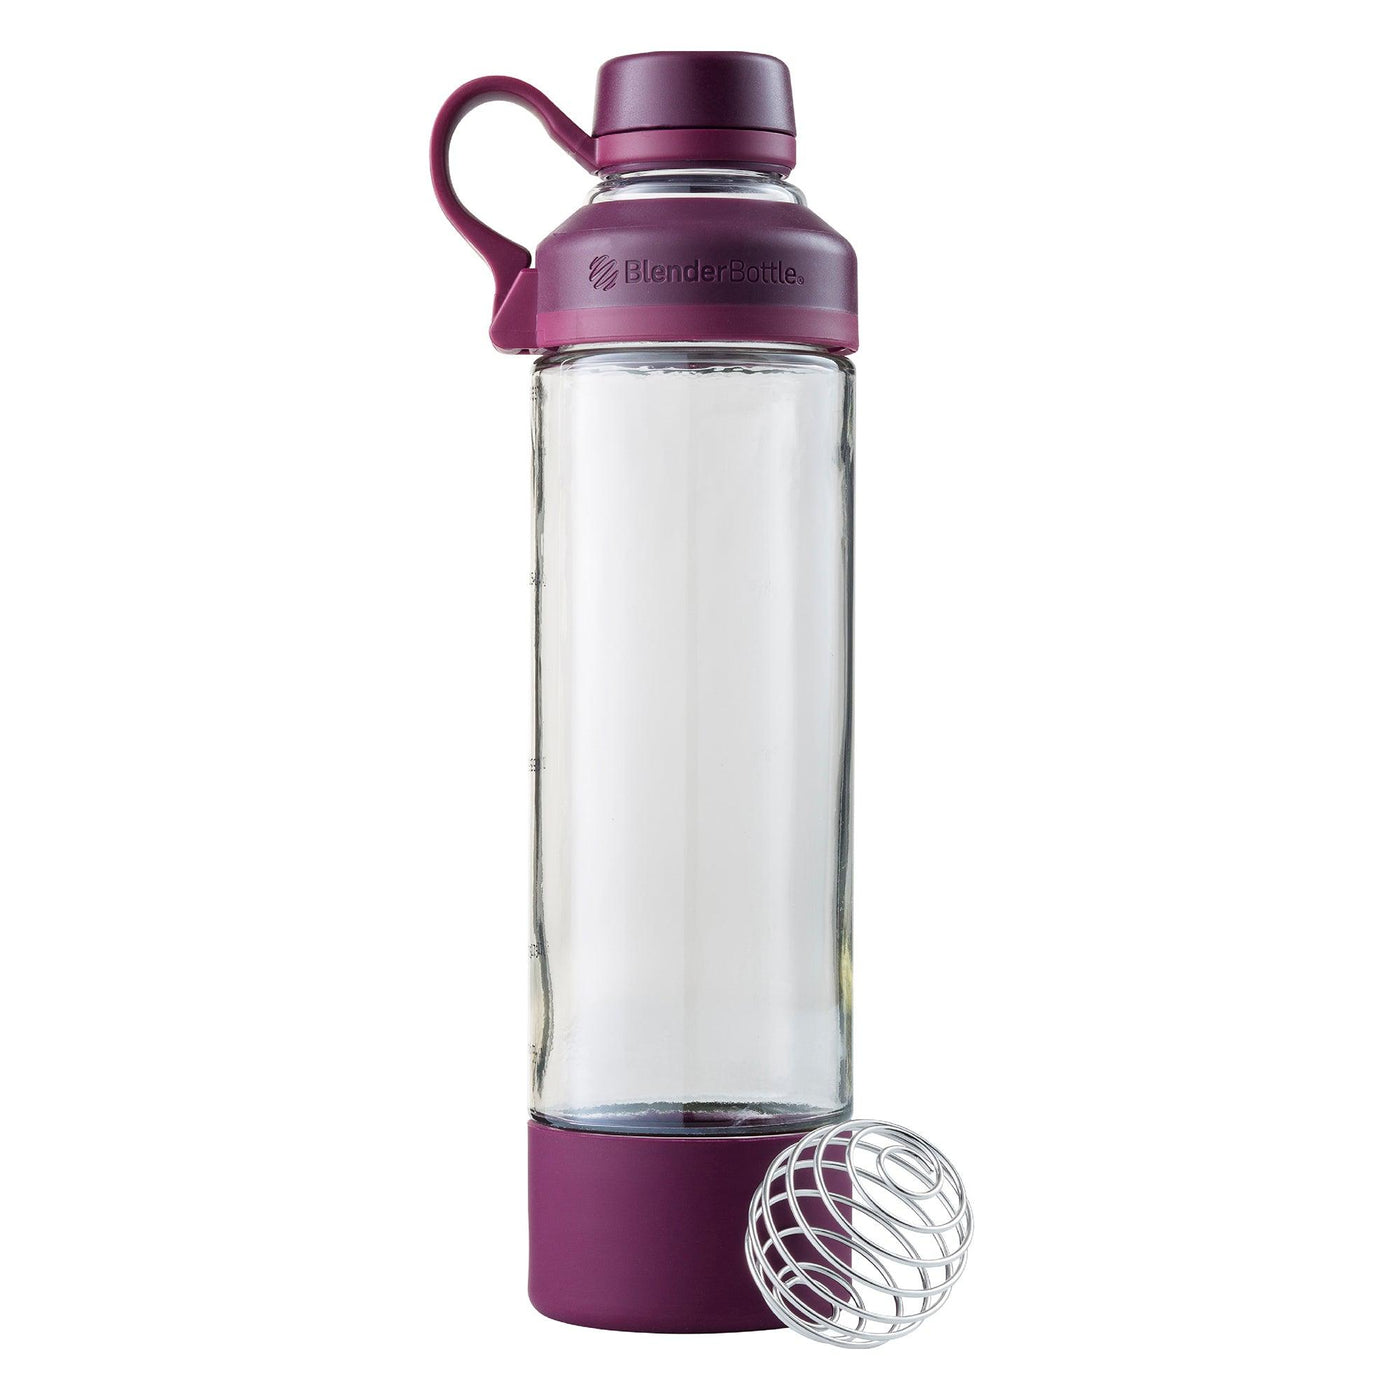 BlenderBottle 20oz Mantra Glass Shaker Bottle Rose Pink 